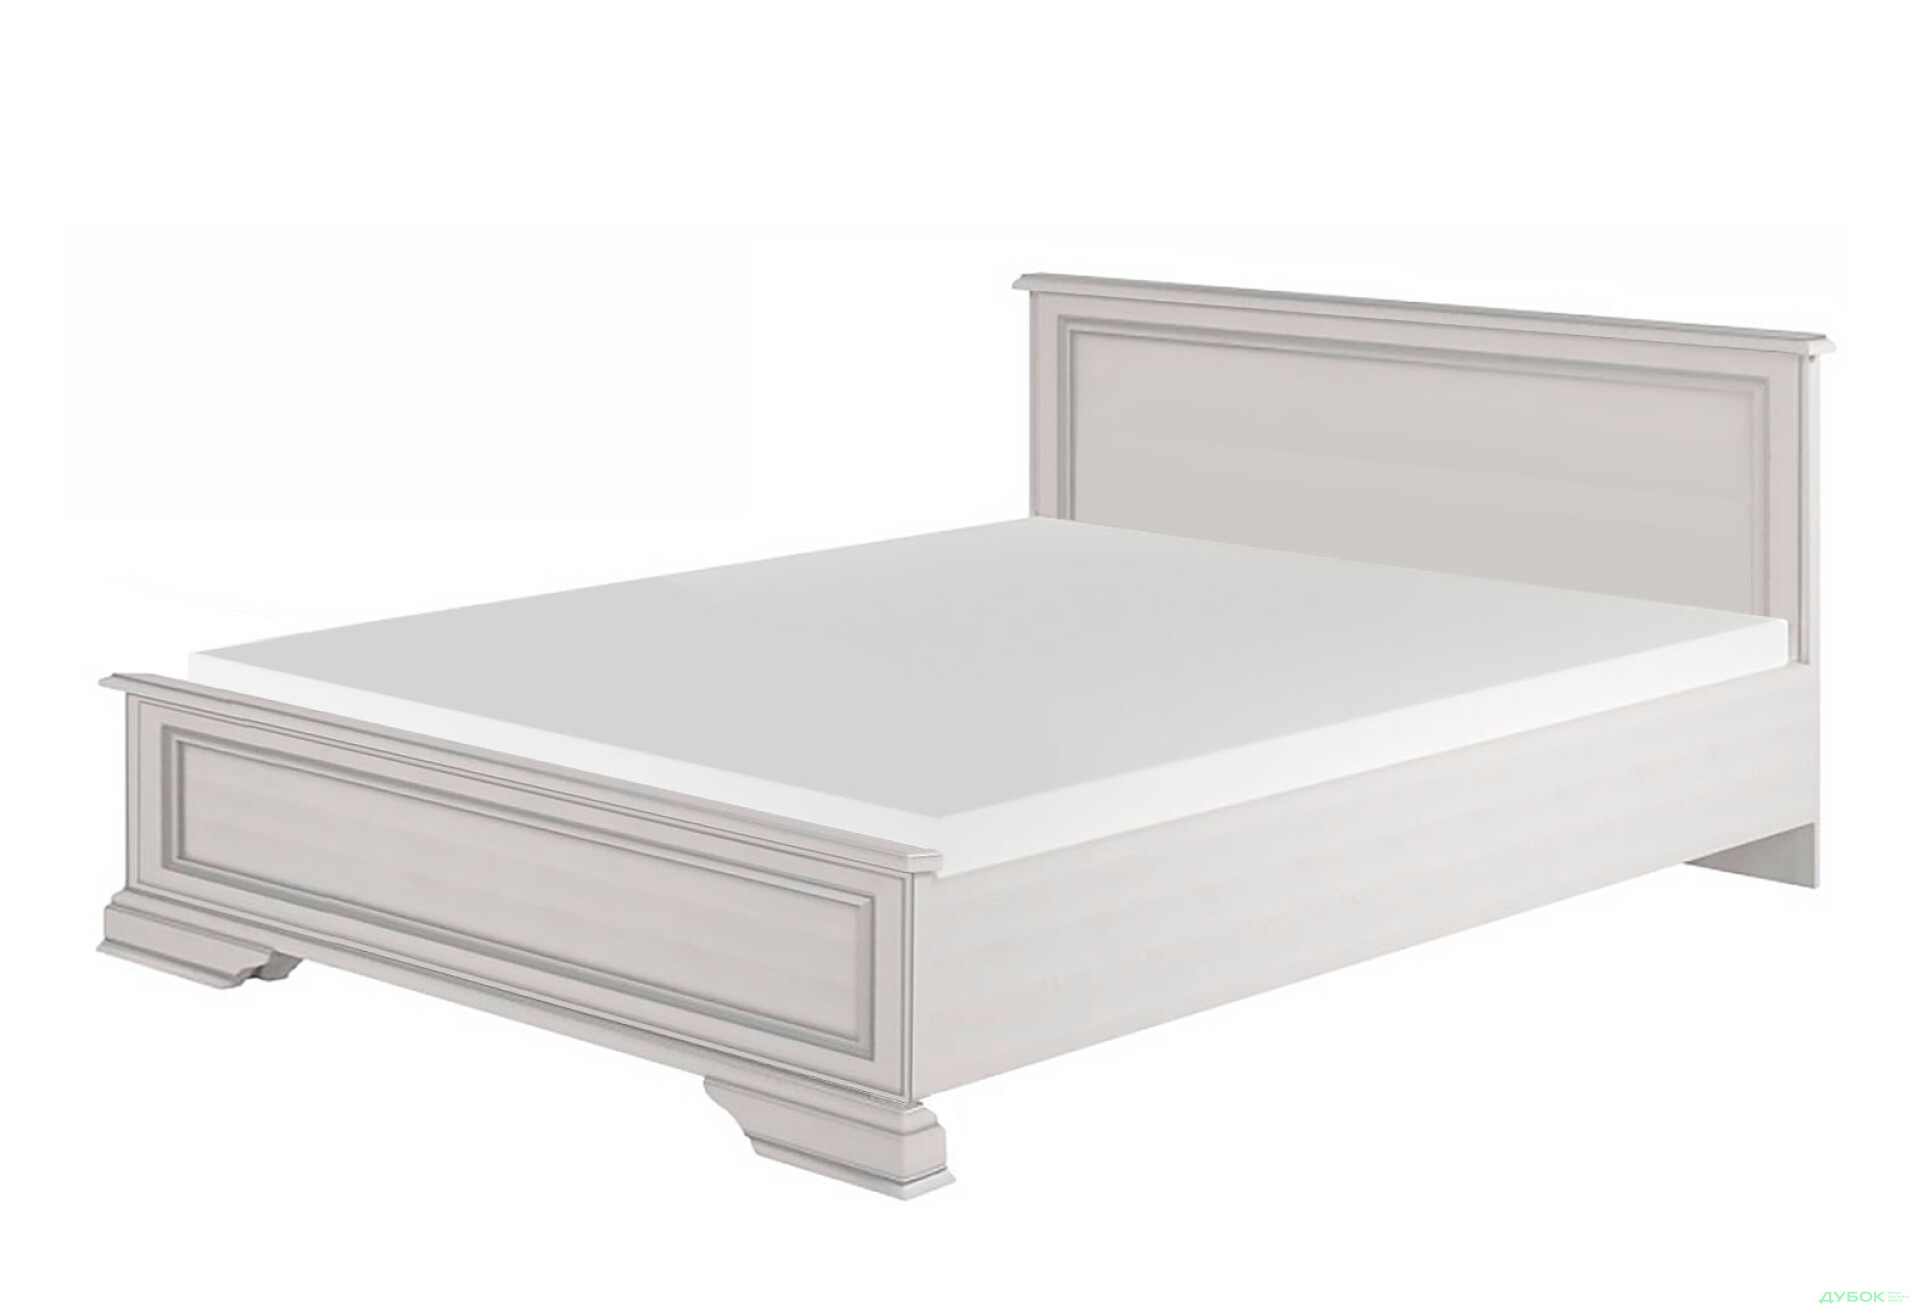 Фото 1 - Кровать ВМК Кентуки (без вклада) 160х200 см, белая